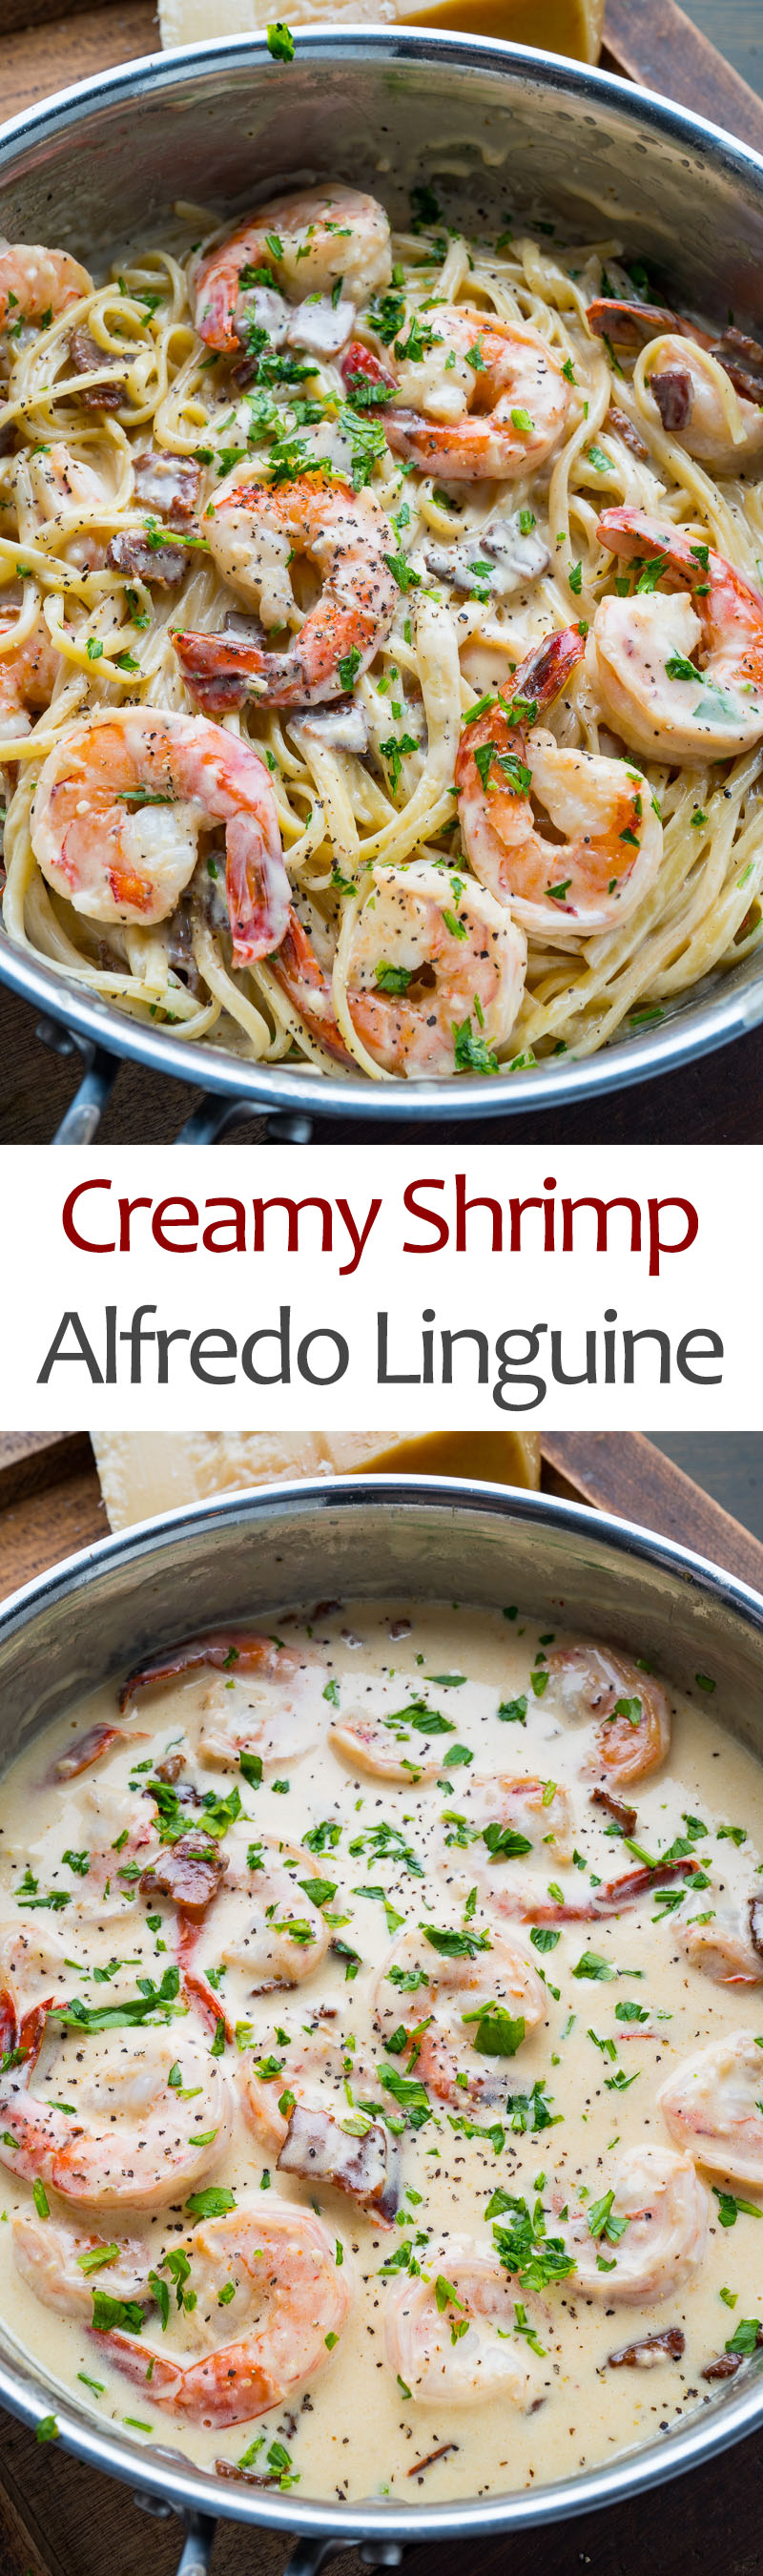 Creamy Shrimp Alfredo Linguine